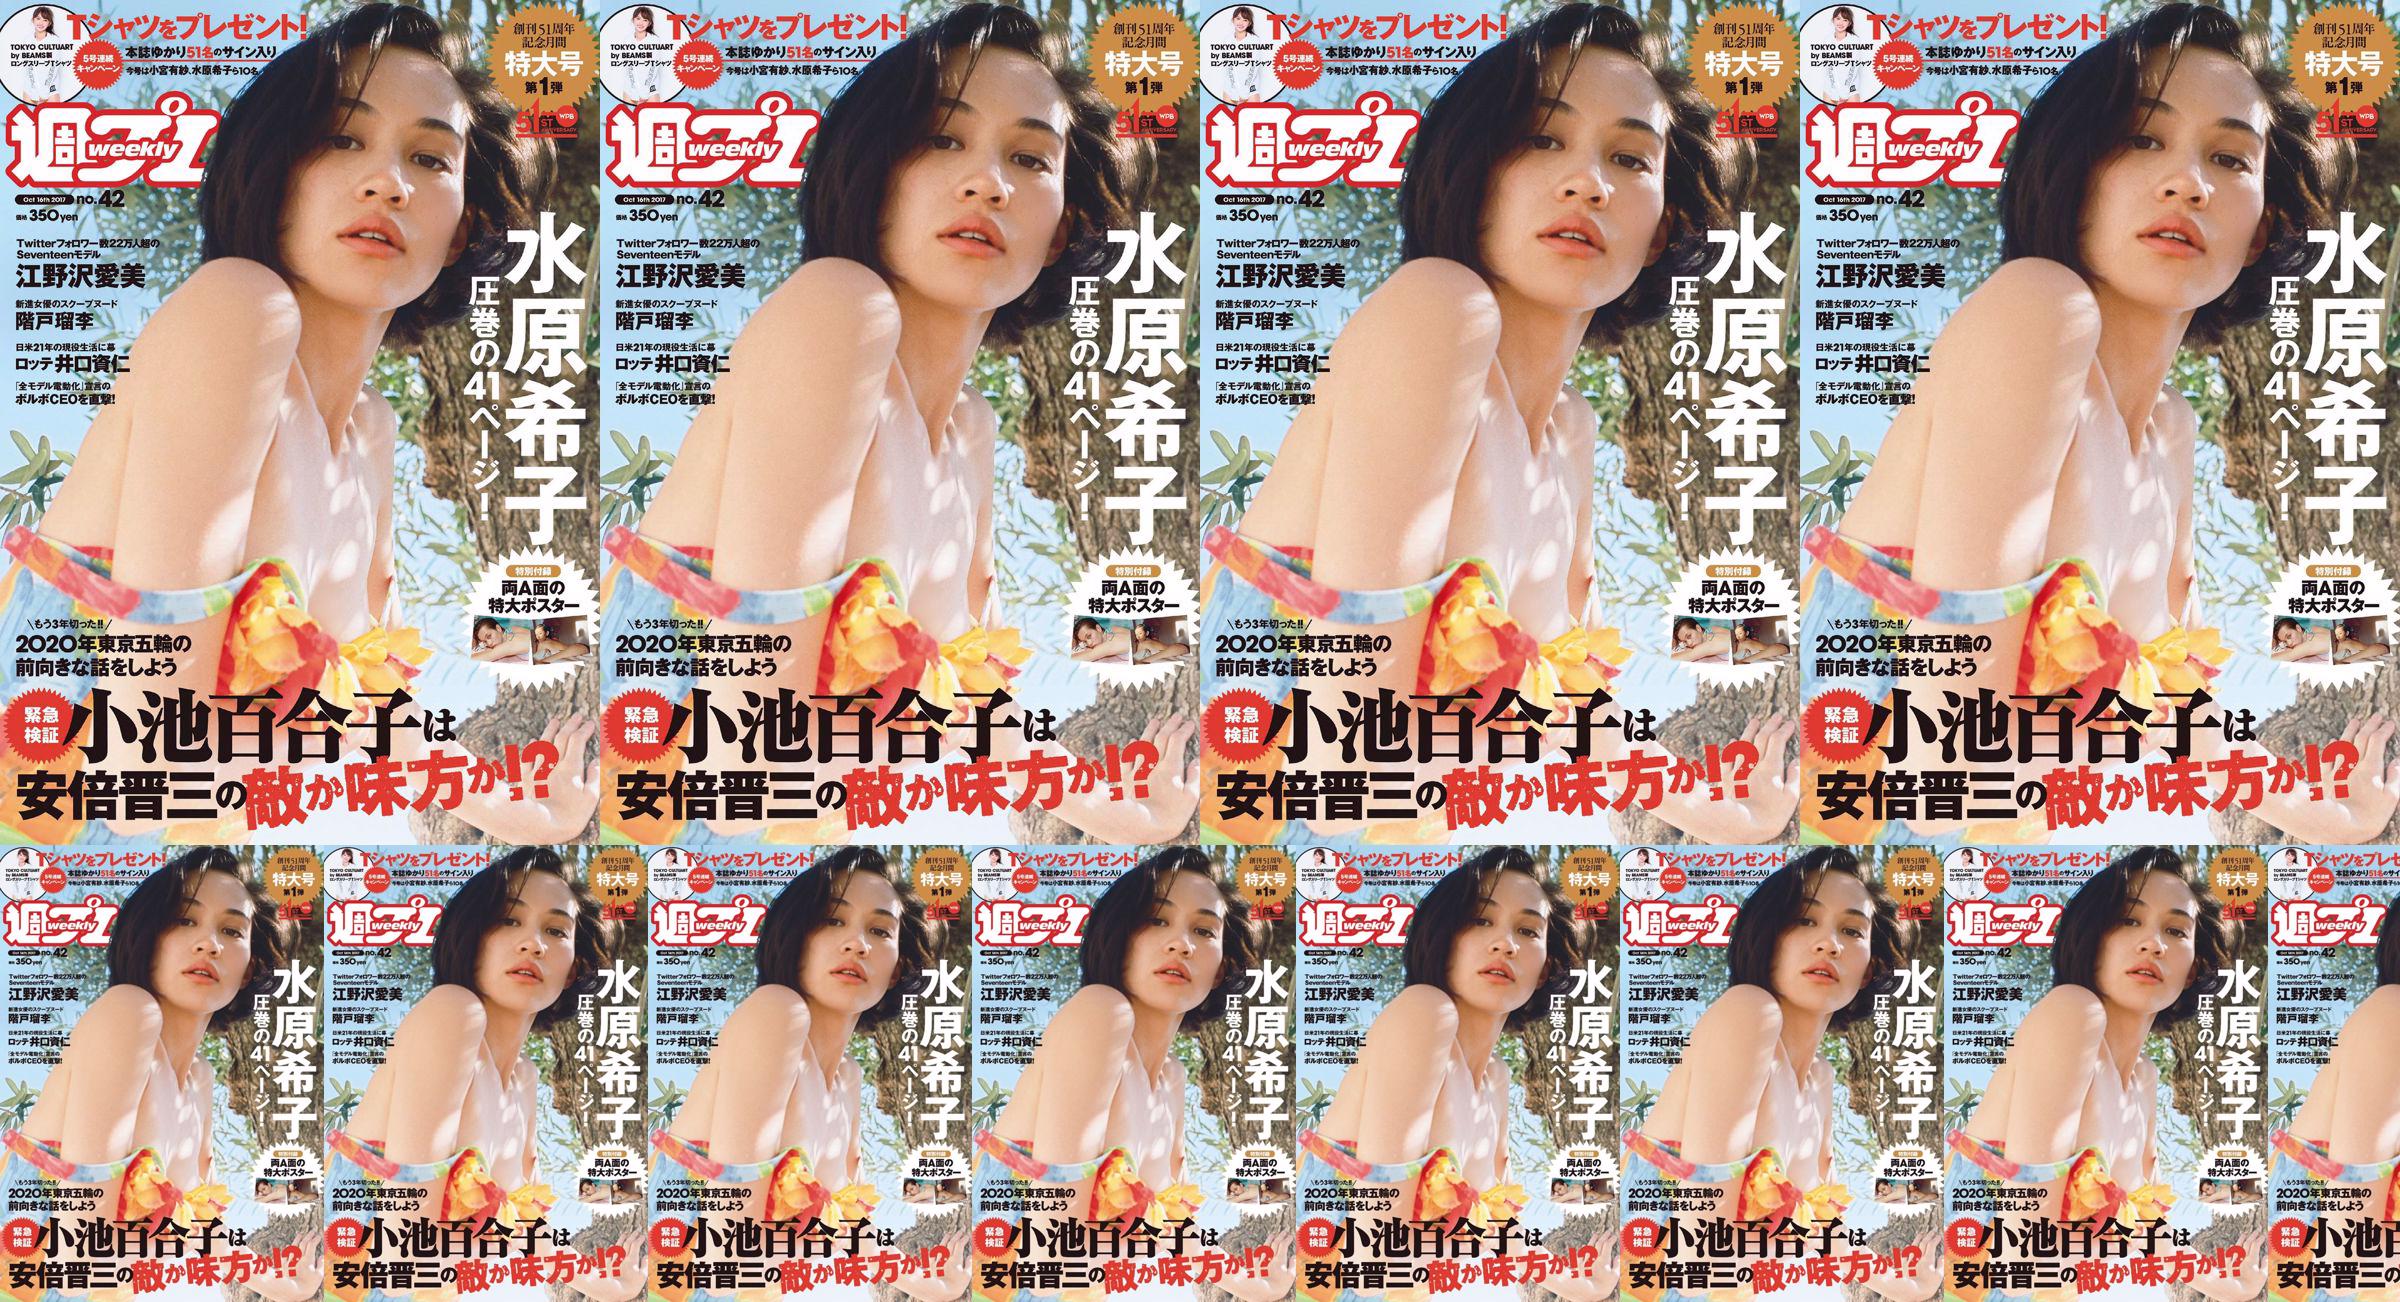 Kiko Mizuhara Manami Enosawa Serina Fukui Miu Nakamura Ruri Shinato [Weekly Playboy] 2017 No.42 Photo Magazine No.b7d6f0 Pagina 11